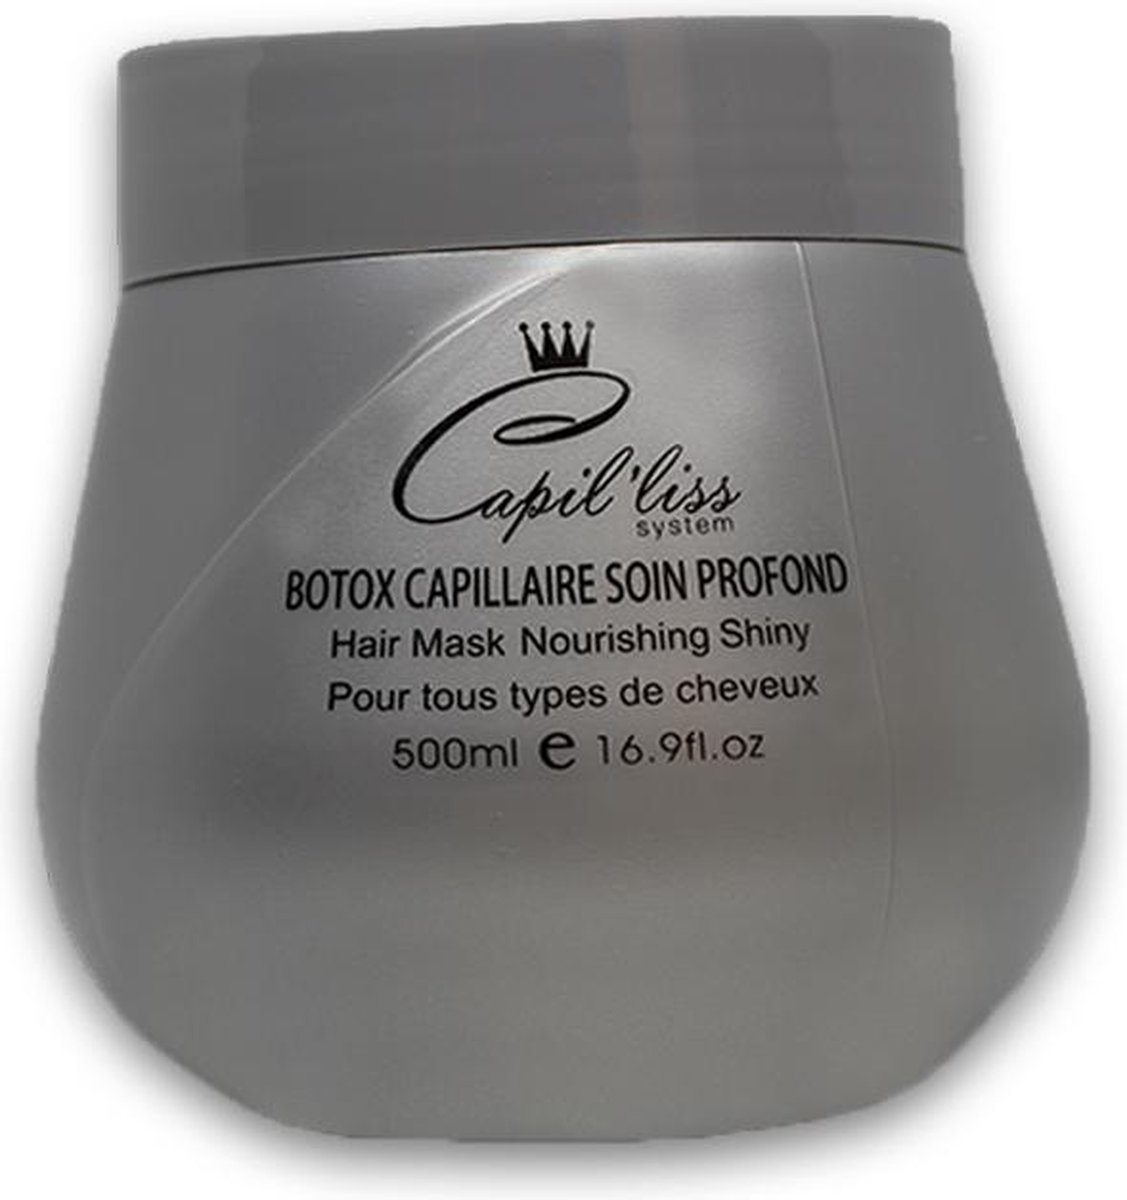 Capilliss System Botox Hair Mask, 500ml